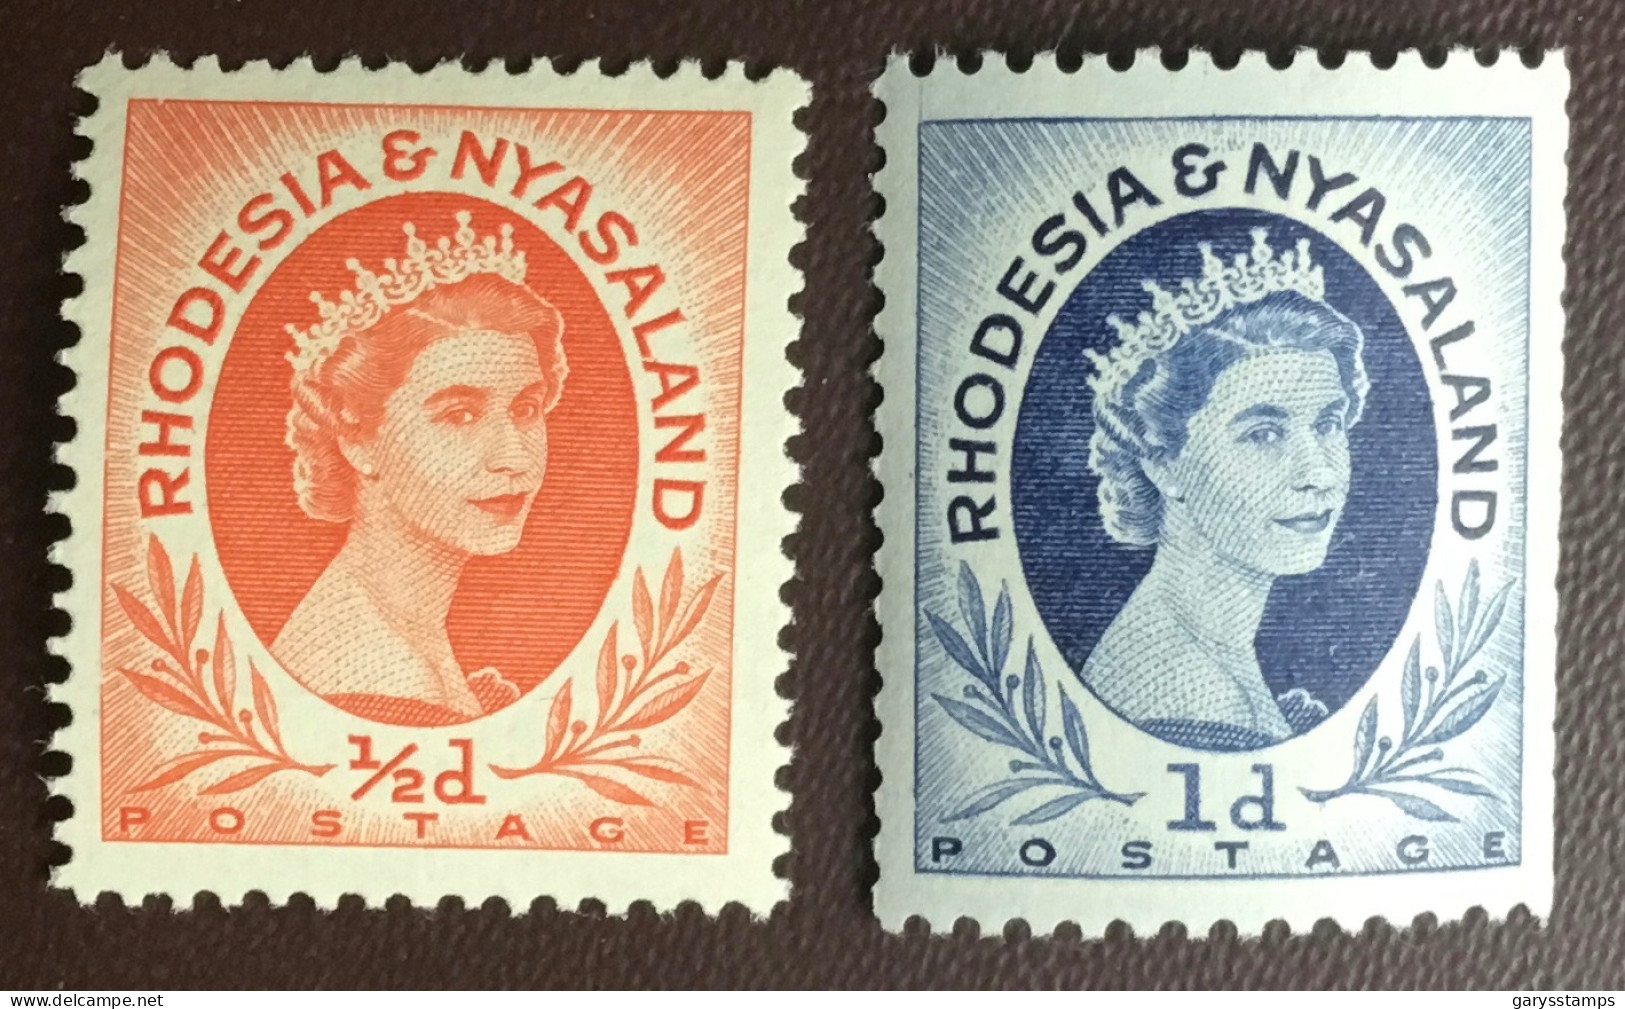 Rhodesia & Nyasaland 1956 Coil Stamps Definitives Set SG1a, 2a MNH - Rhodesia & Nyasaland (1954-1963)